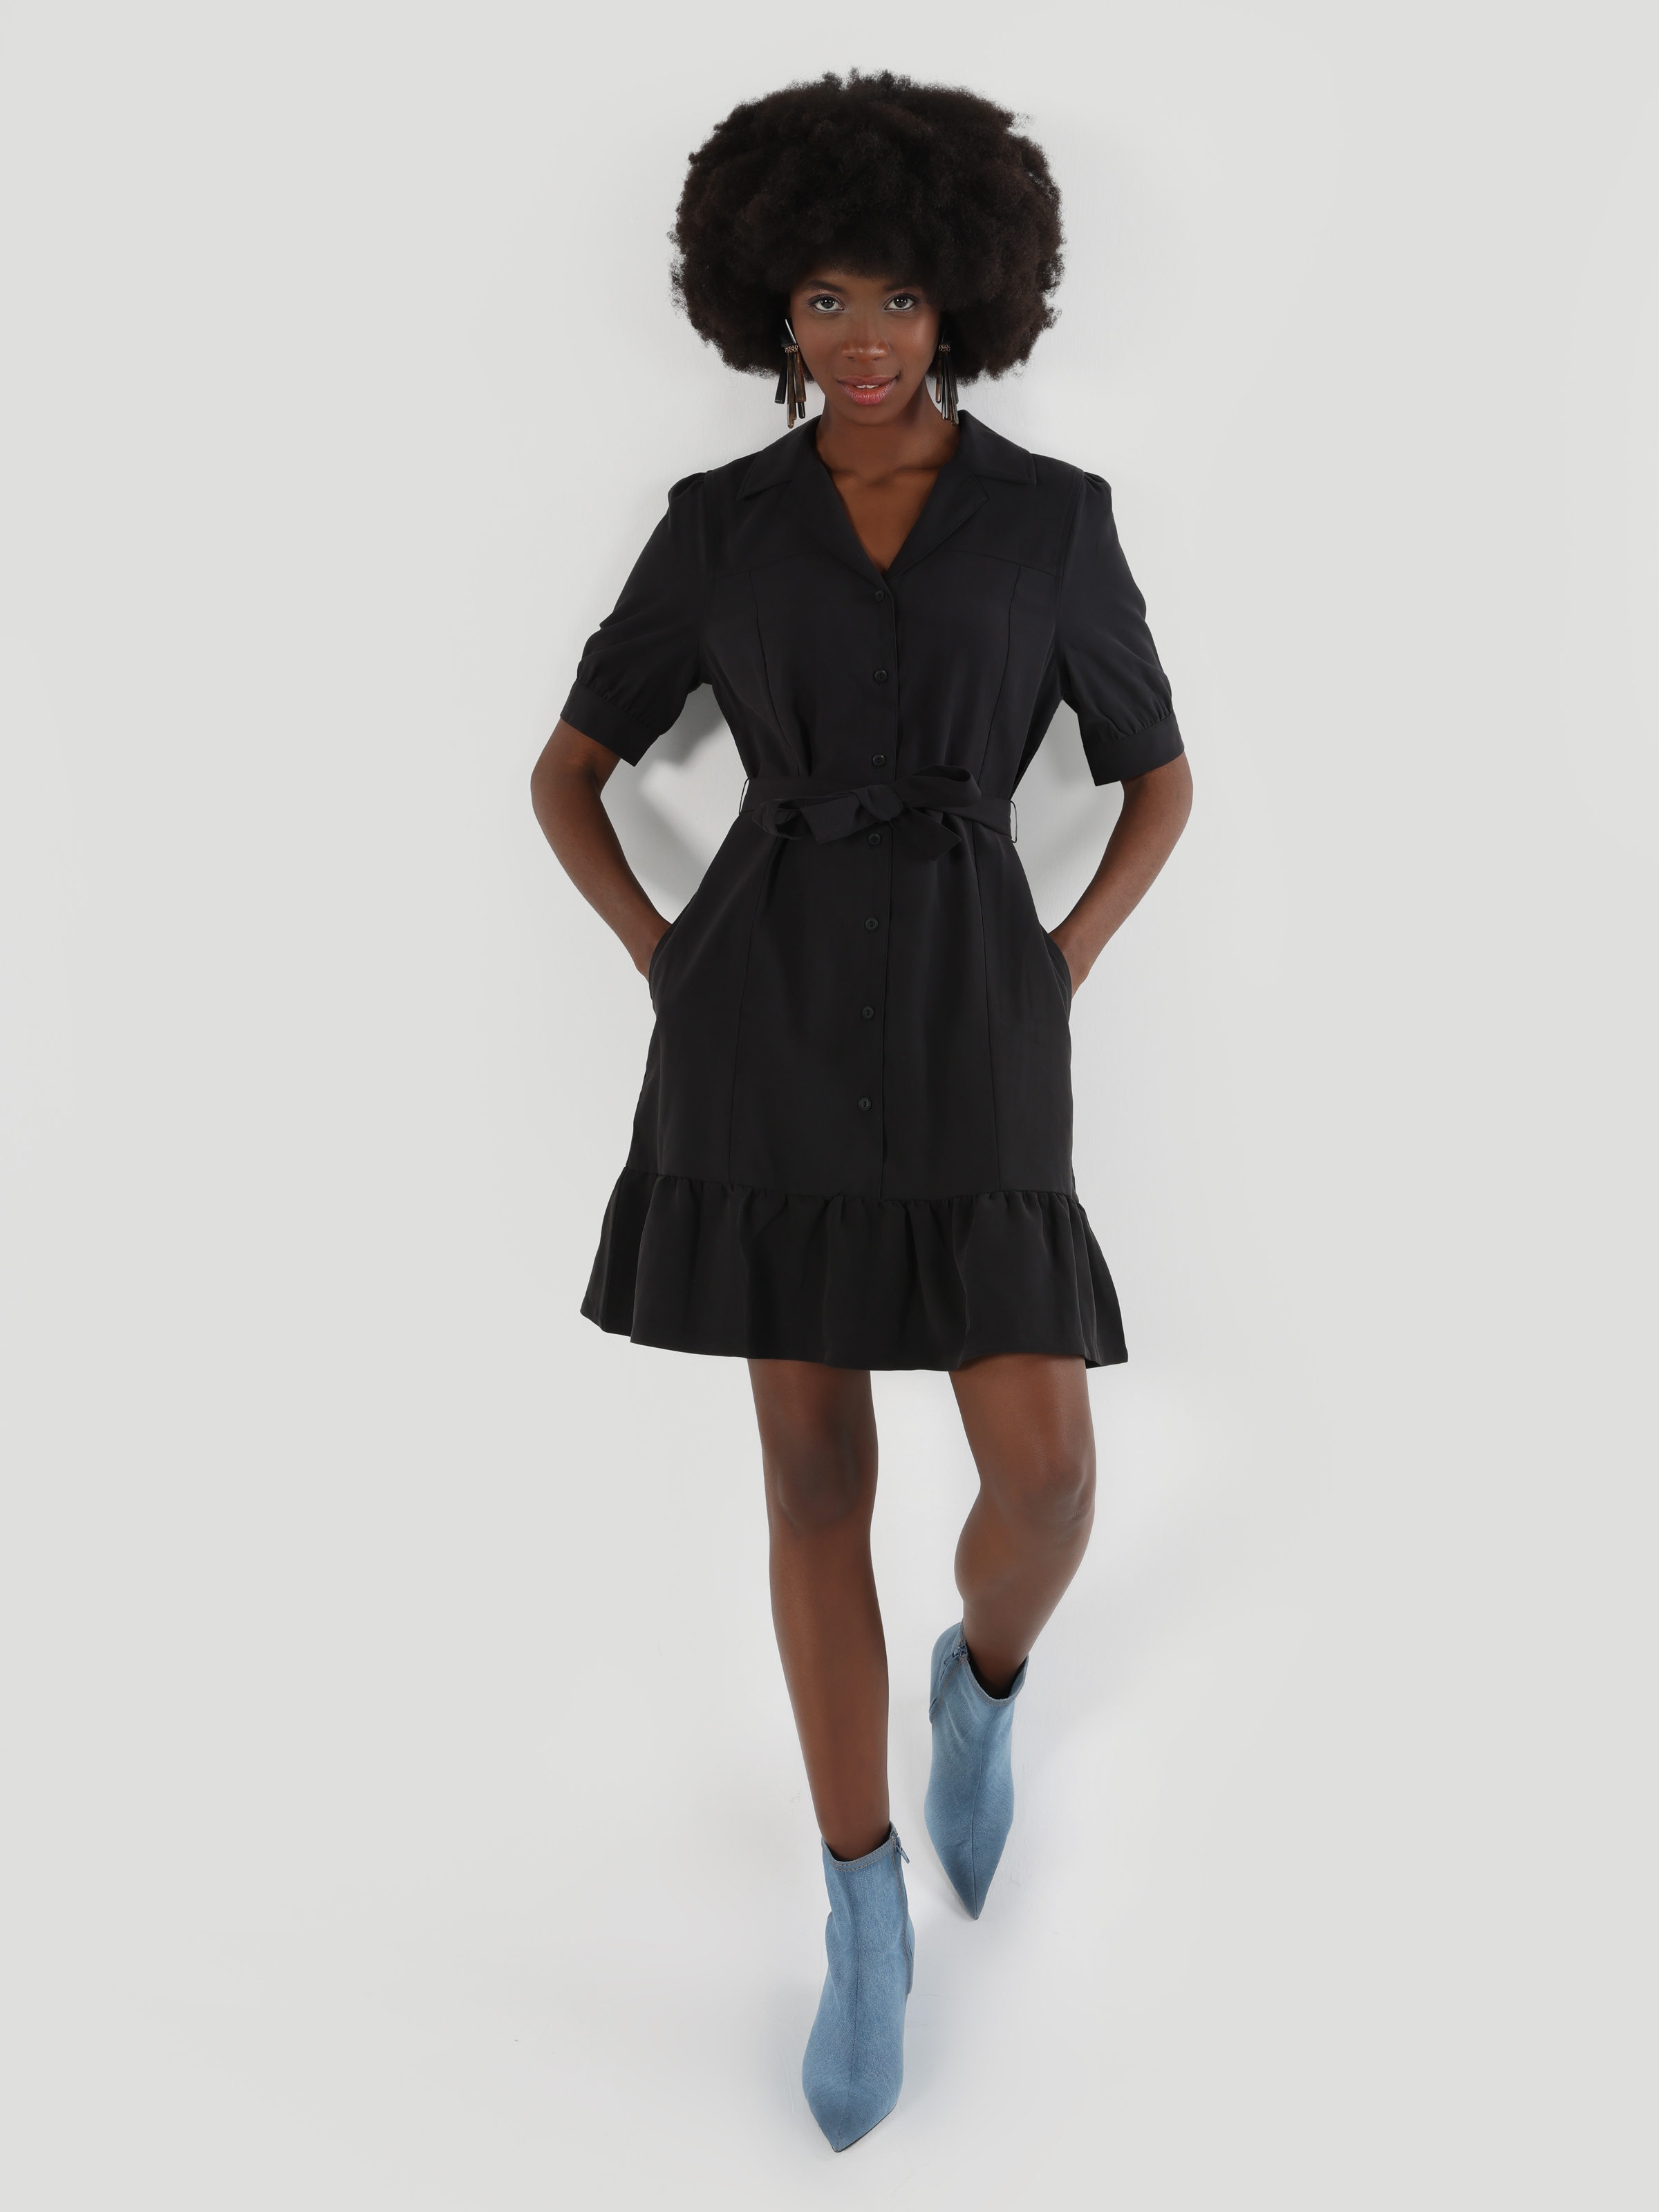 Afficher les détails de Robe Femme Noire Plissée Coupe Régulière Avec Ceinture